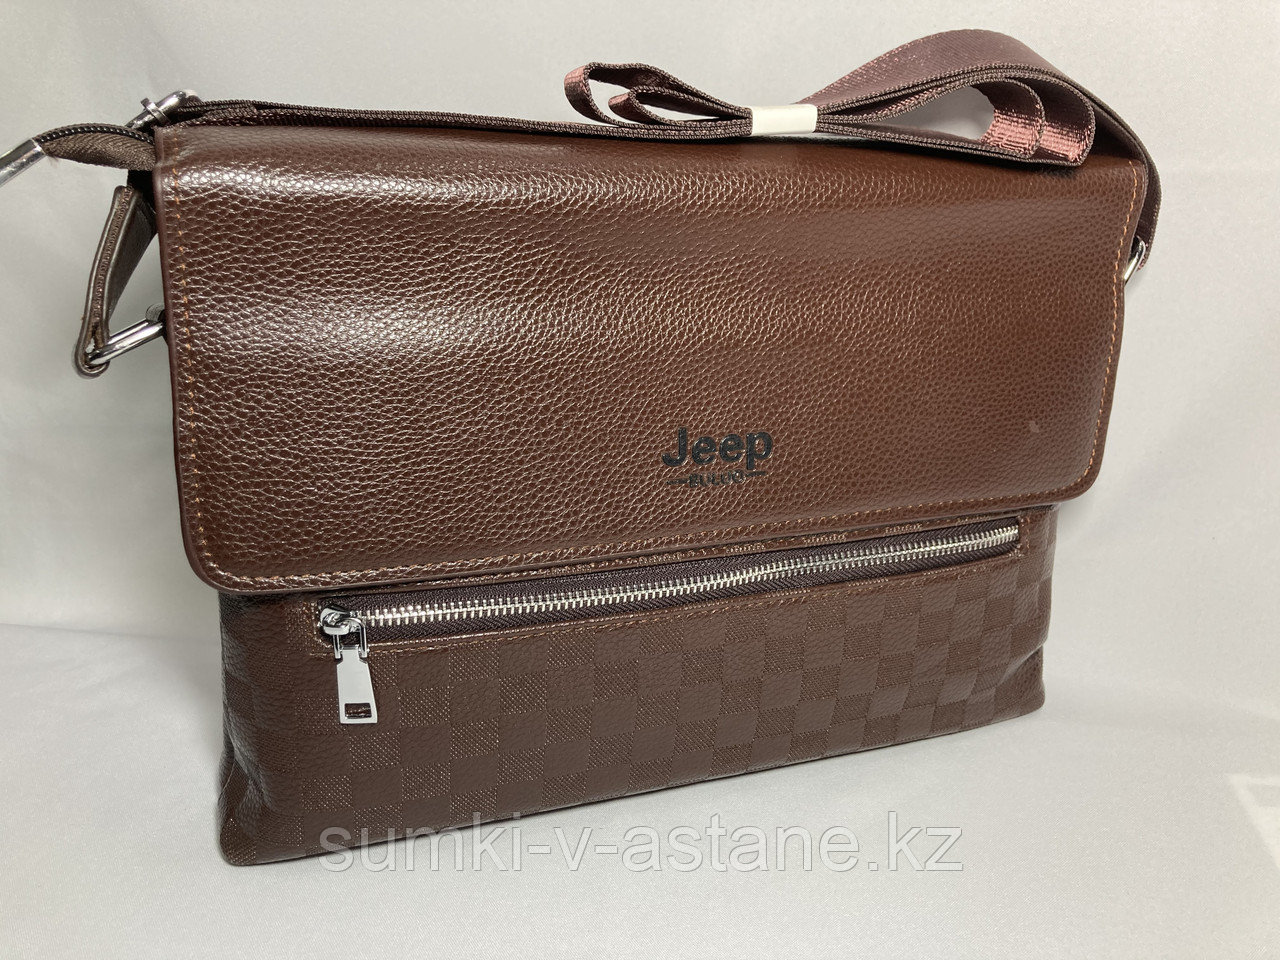 Мужская сумка-мессенджер через плечо "JEEP" (высота 24 см, ширина 34 см, глубина 6 см)